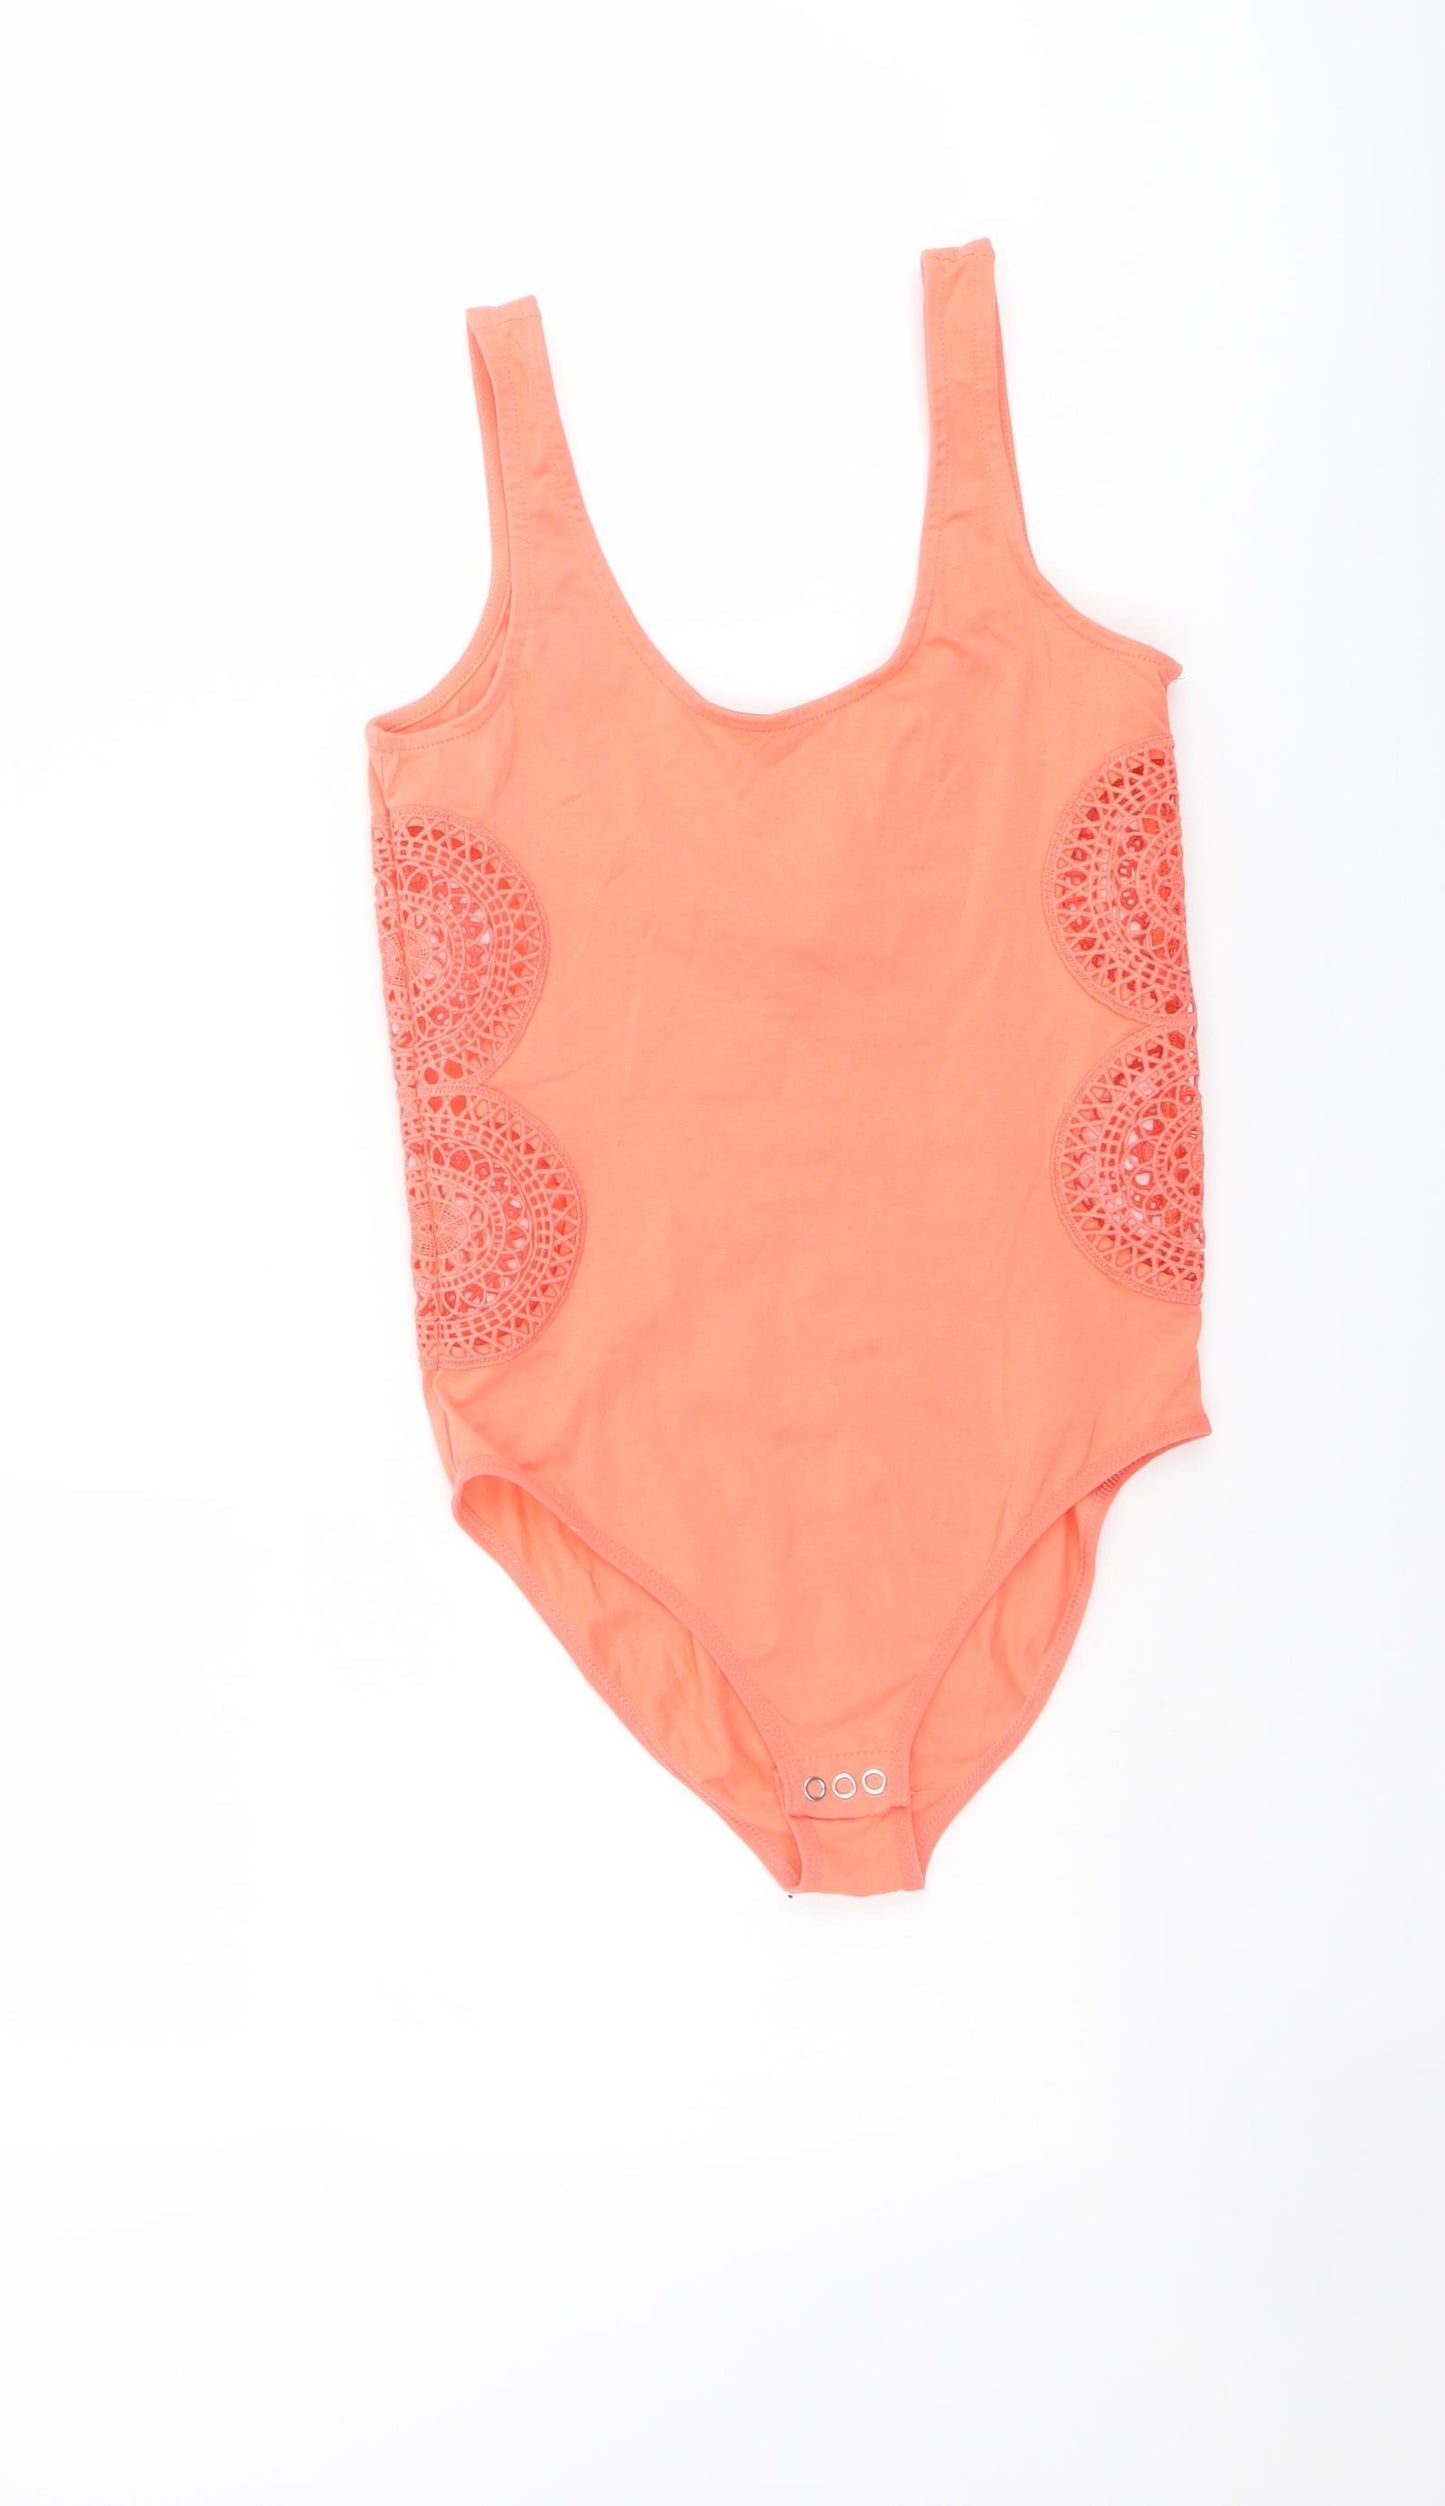 Topshop Womens Orange Cotton Playsuit One-Piece Size 8 Snap - Cut Out Lace Side